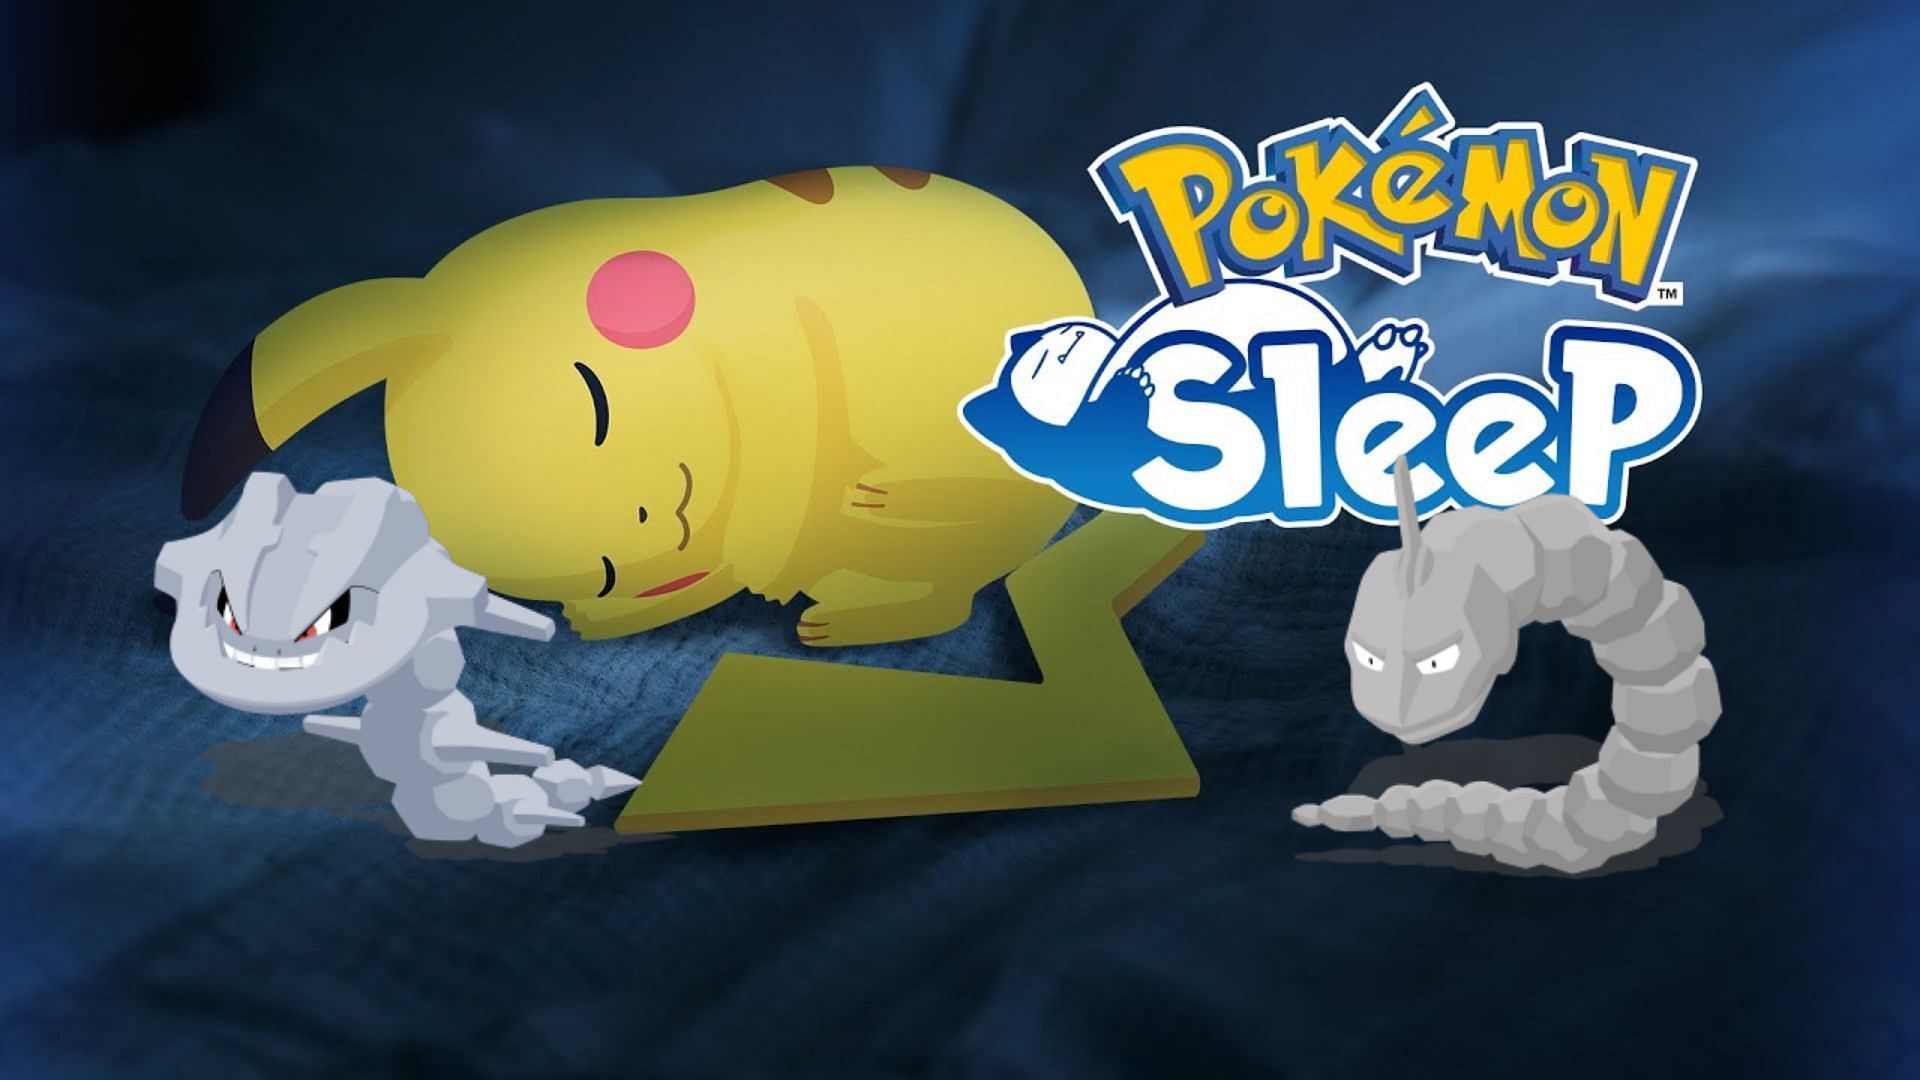 Pokemon Sleep Onix and Steelix release date